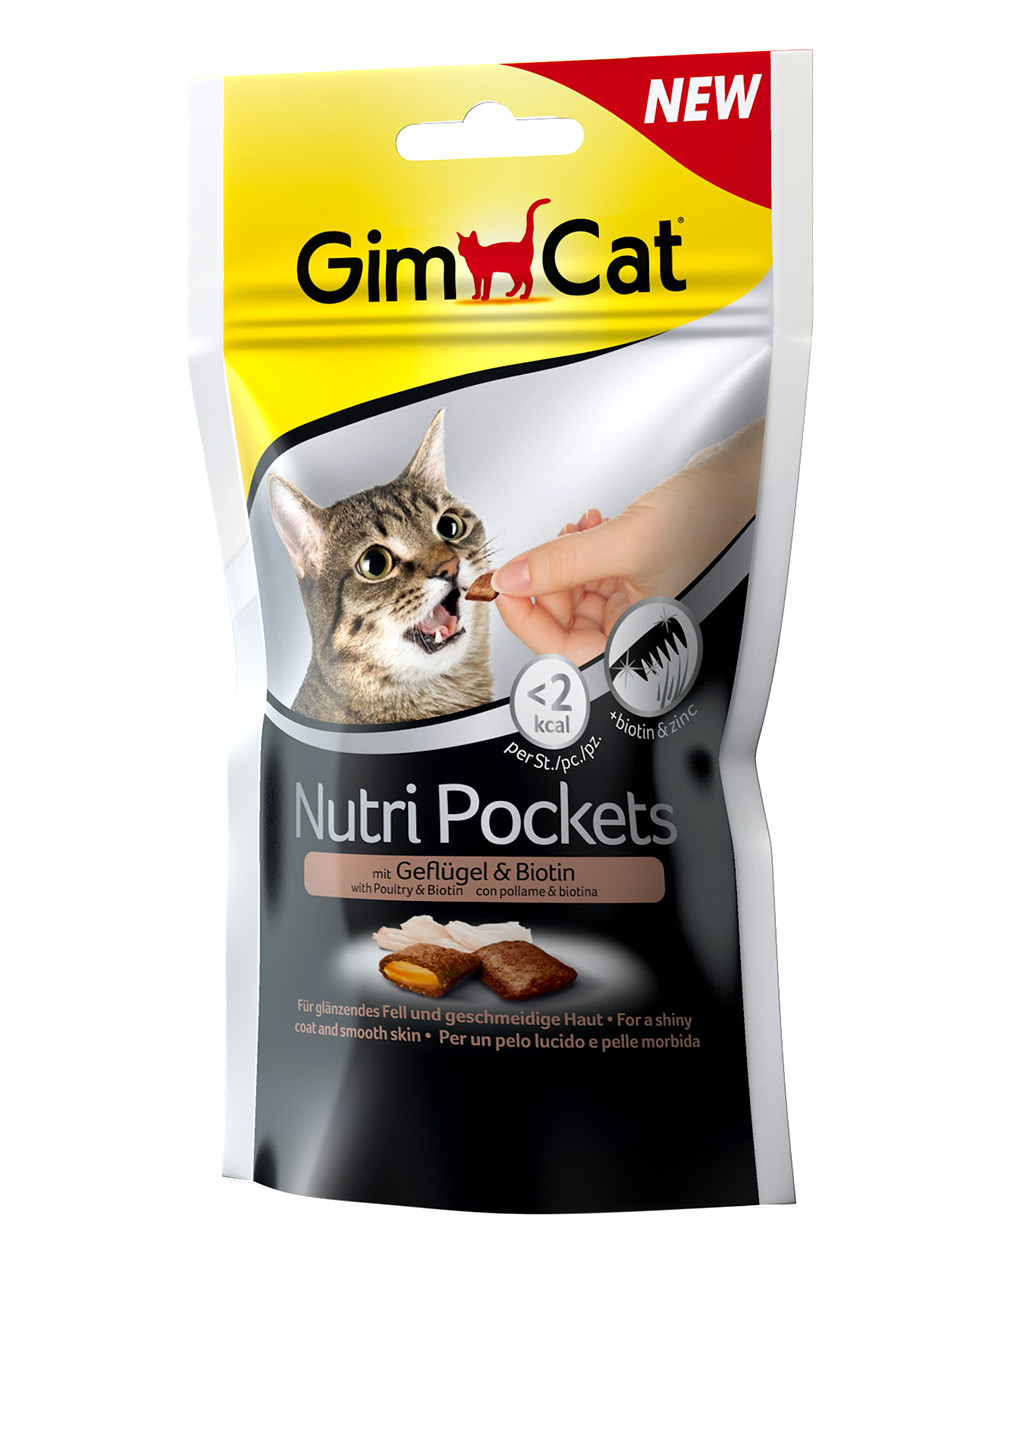 Лакомство для кошек Nutri Pockets, 60г Gimborn (16935215)